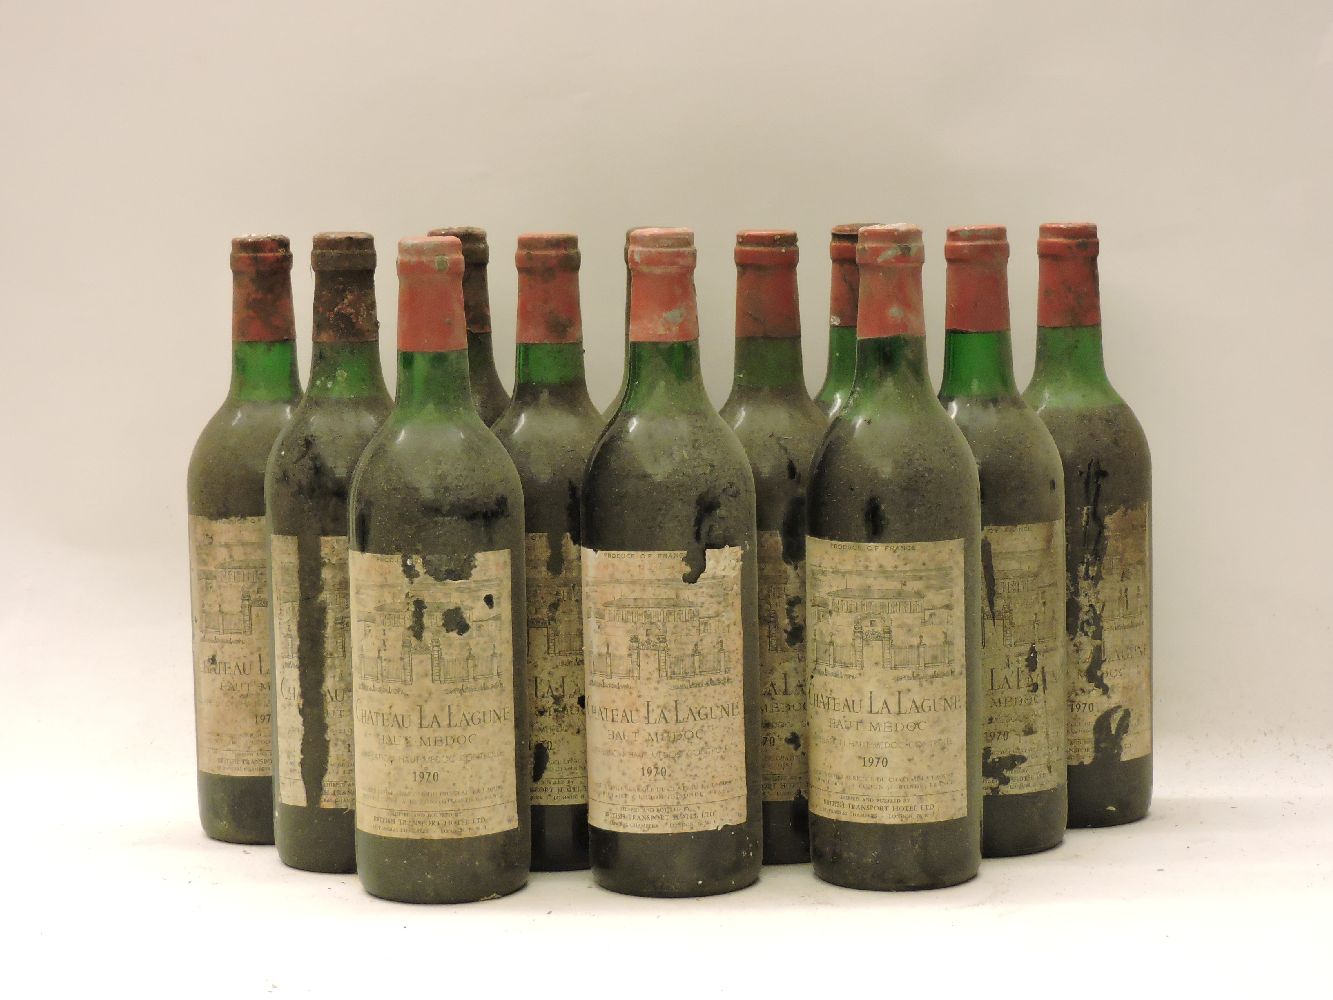 Château La Lagune, Haut-Médoc 3rd growth, 1970, twelve bottles (damaged labels)